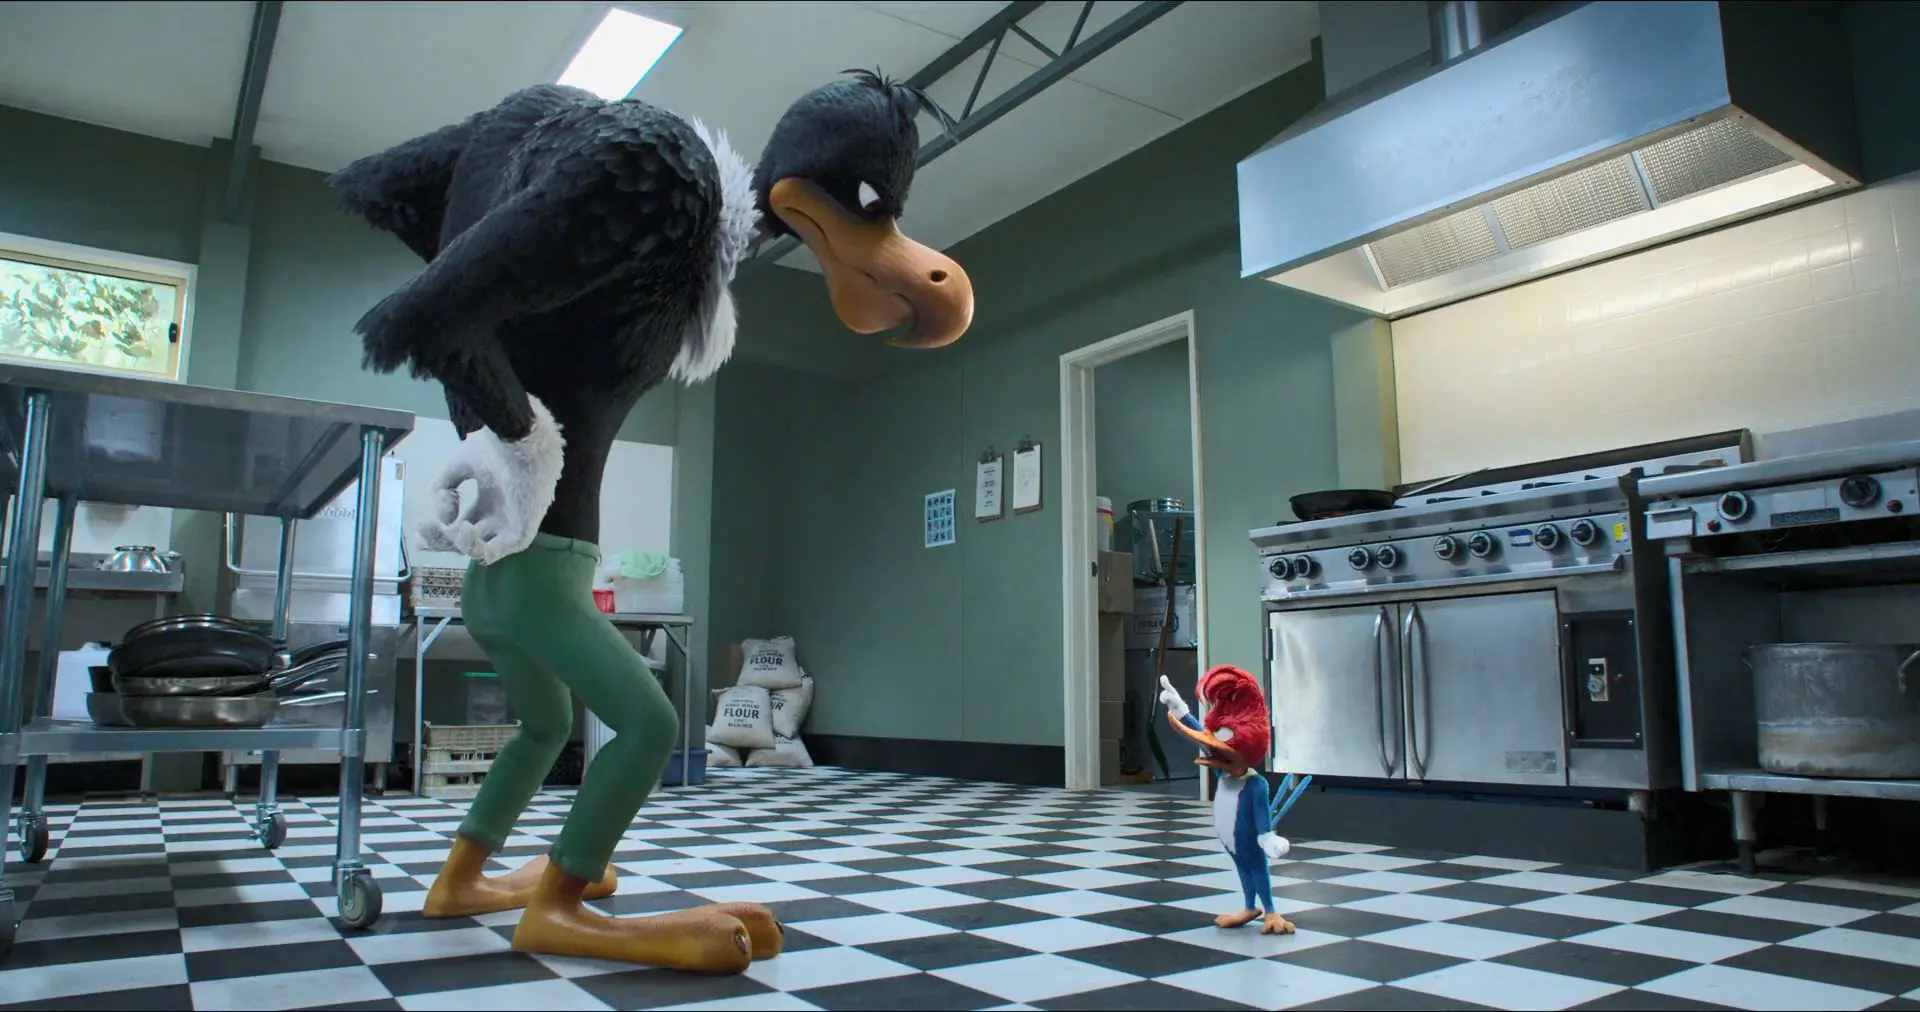 دارکوب زبله در برابر باز در آشپزخانه در فیلم Woody Woodpecker Goes to Camp